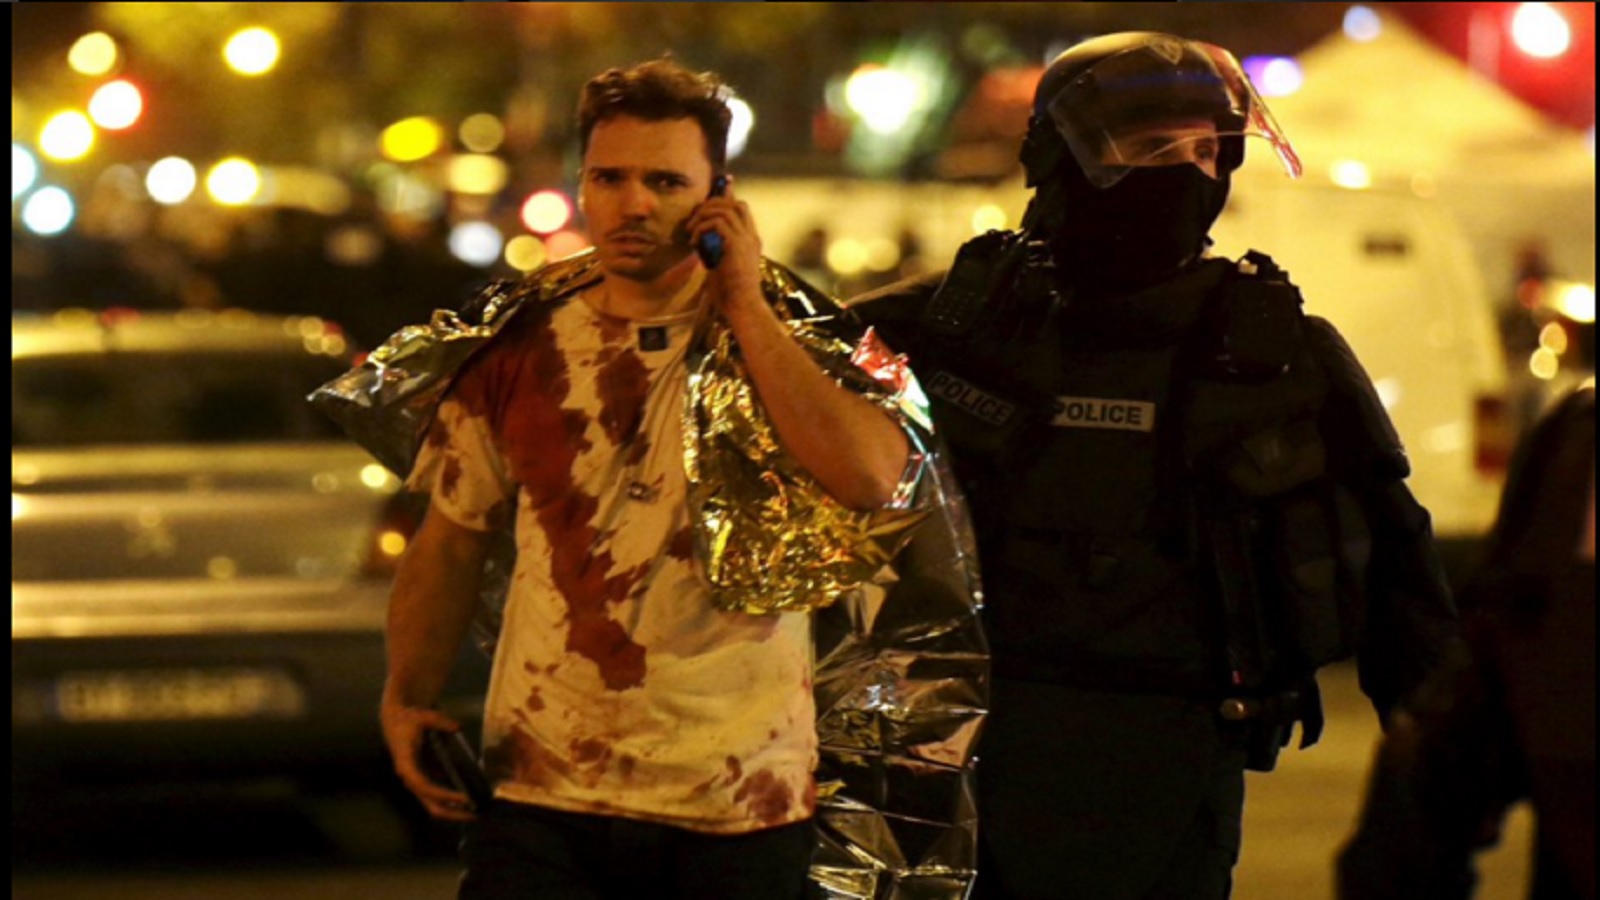 الإعلام الفرنسي بعد الهجمات: المهنة بلا رقص فوق الجثث